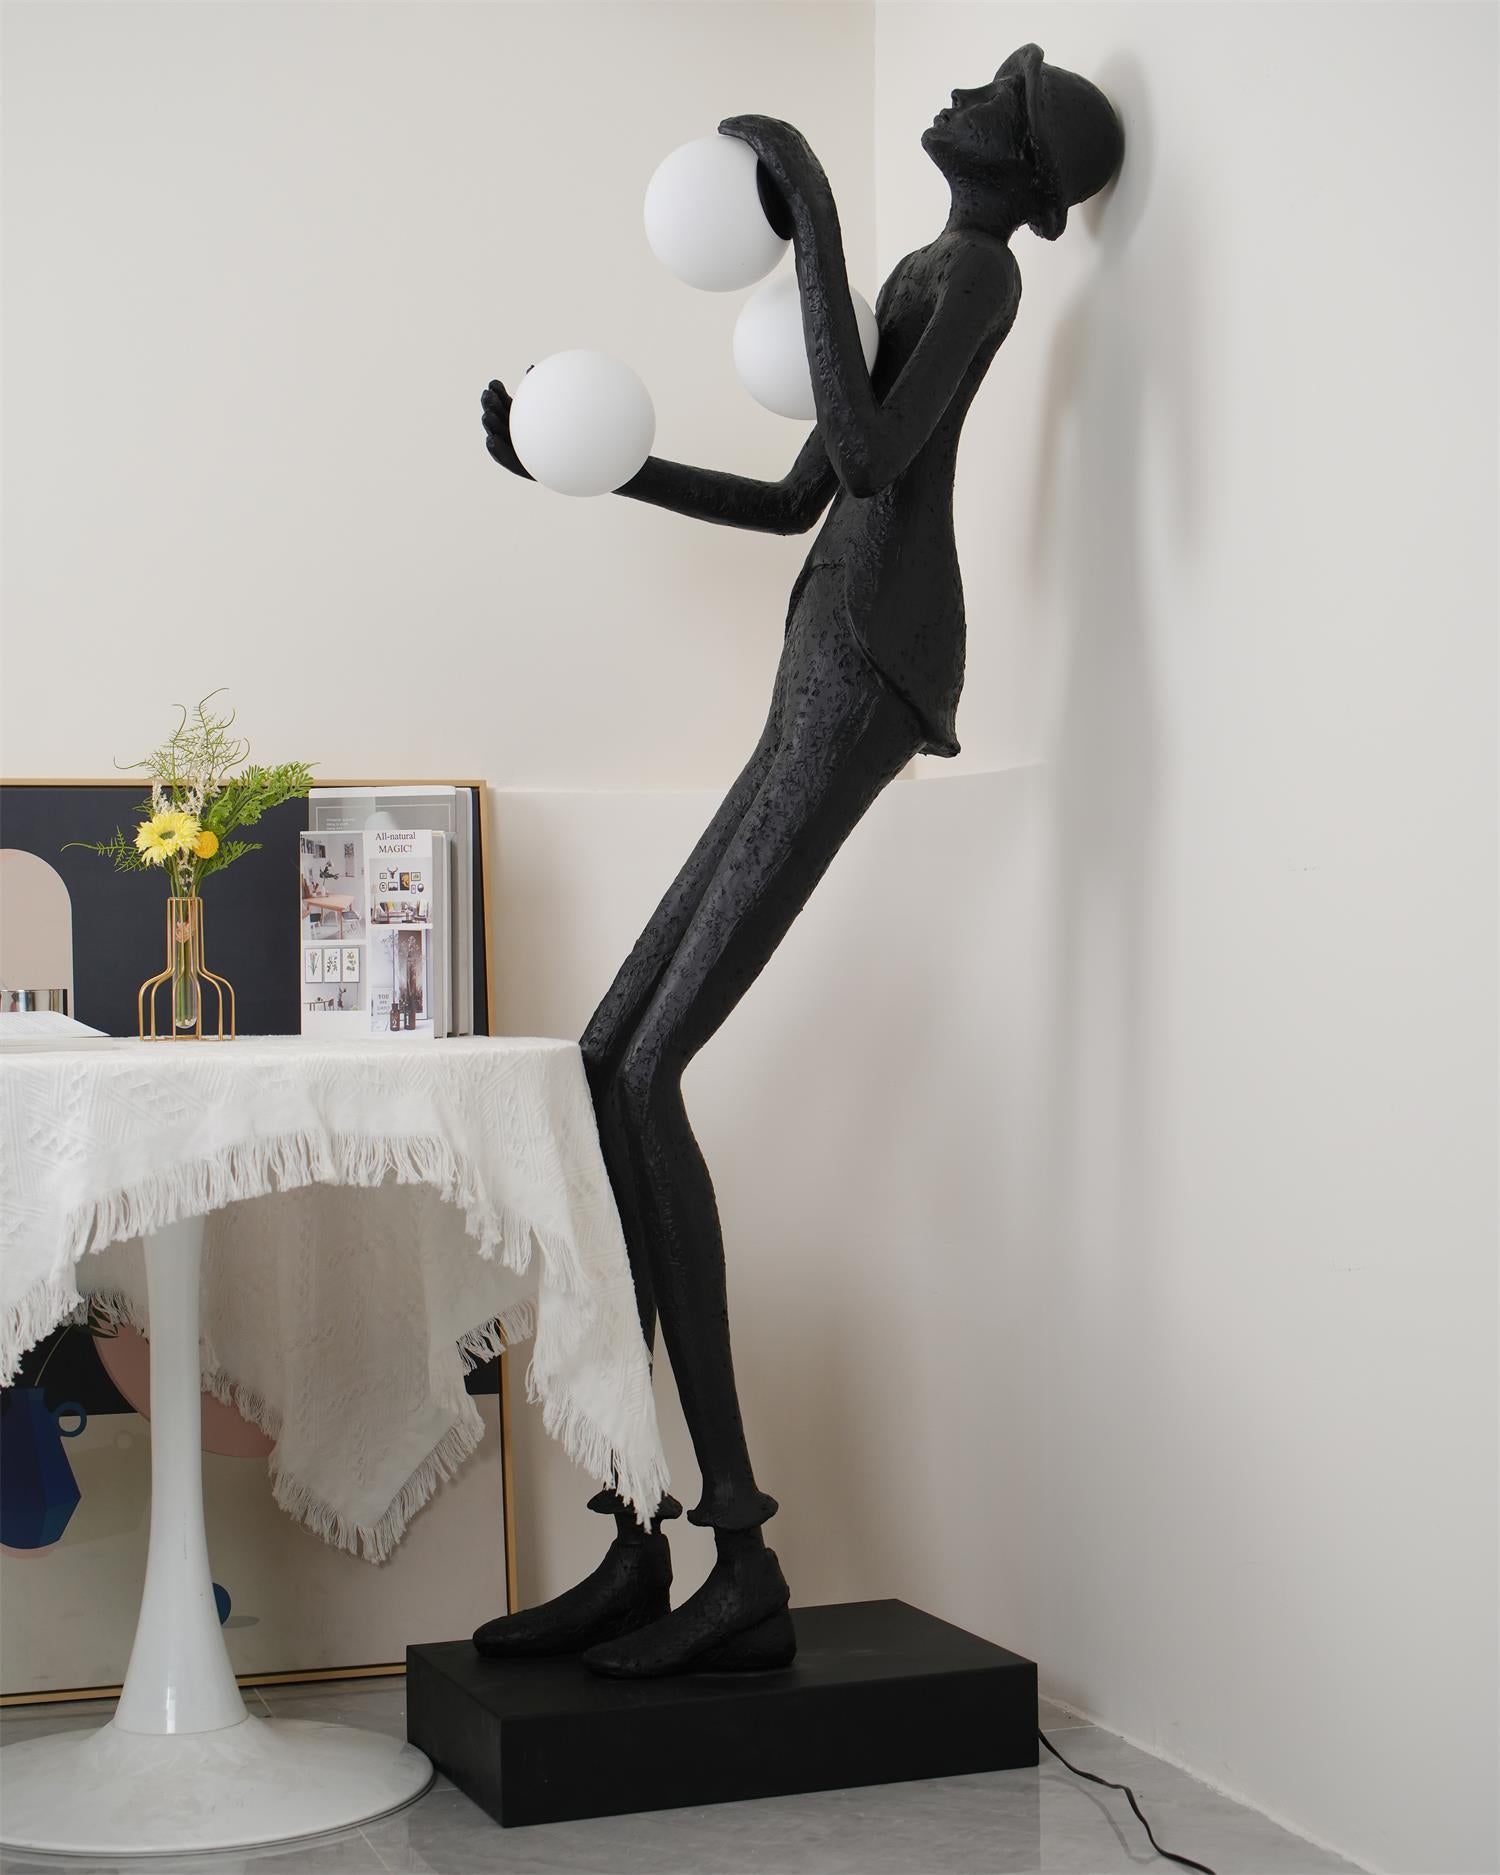 Michael Sculpture Floor Lamp